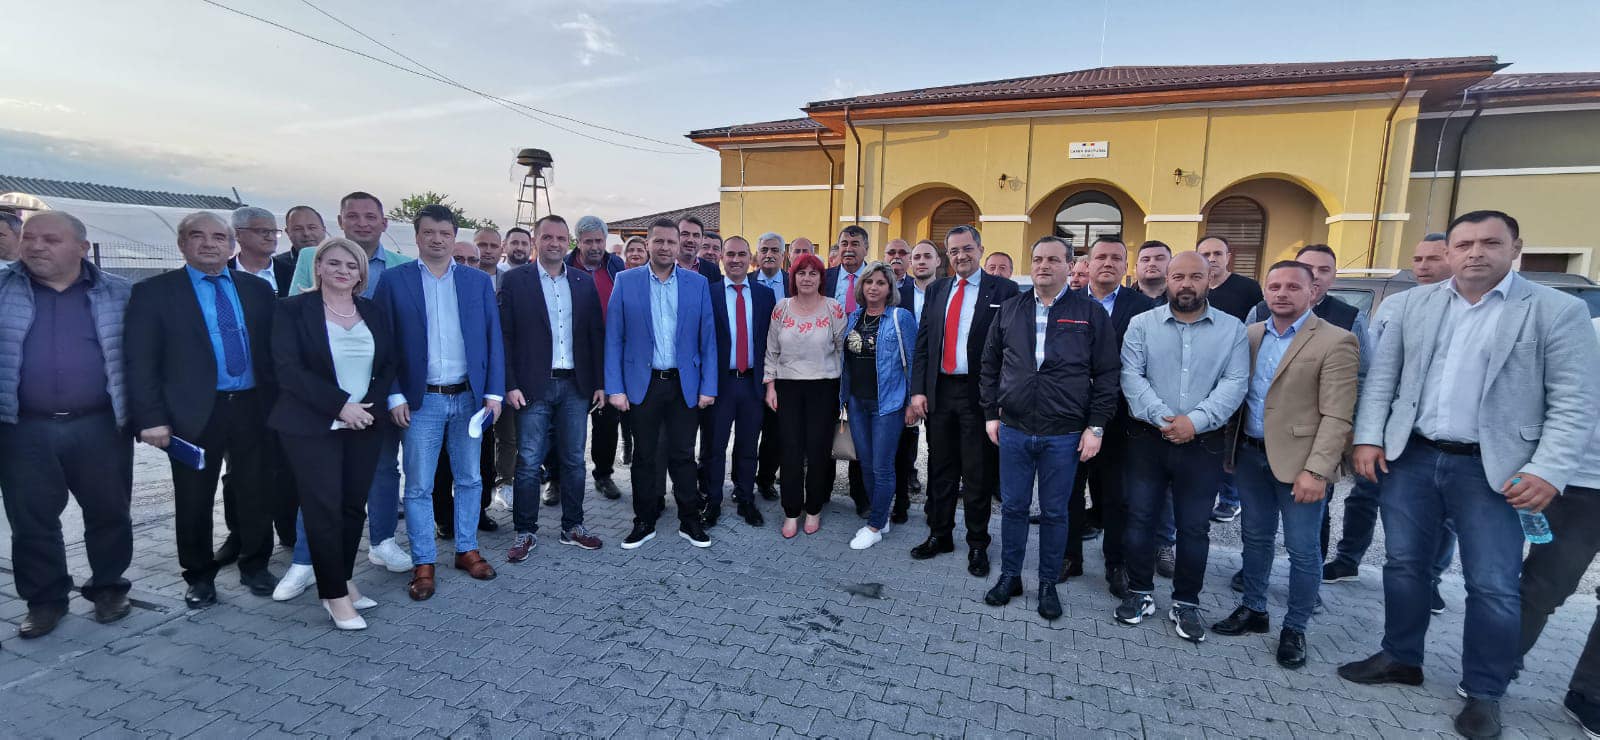 Conducerea PSD Dâmbovița a reluat întâlnirile în teritoriu cu activul de partid și președinții organizațiilor locale. Moreni și Băleni, primele zone vizitate. Urmează Pucioasa, Voinești, Găești și Titu.